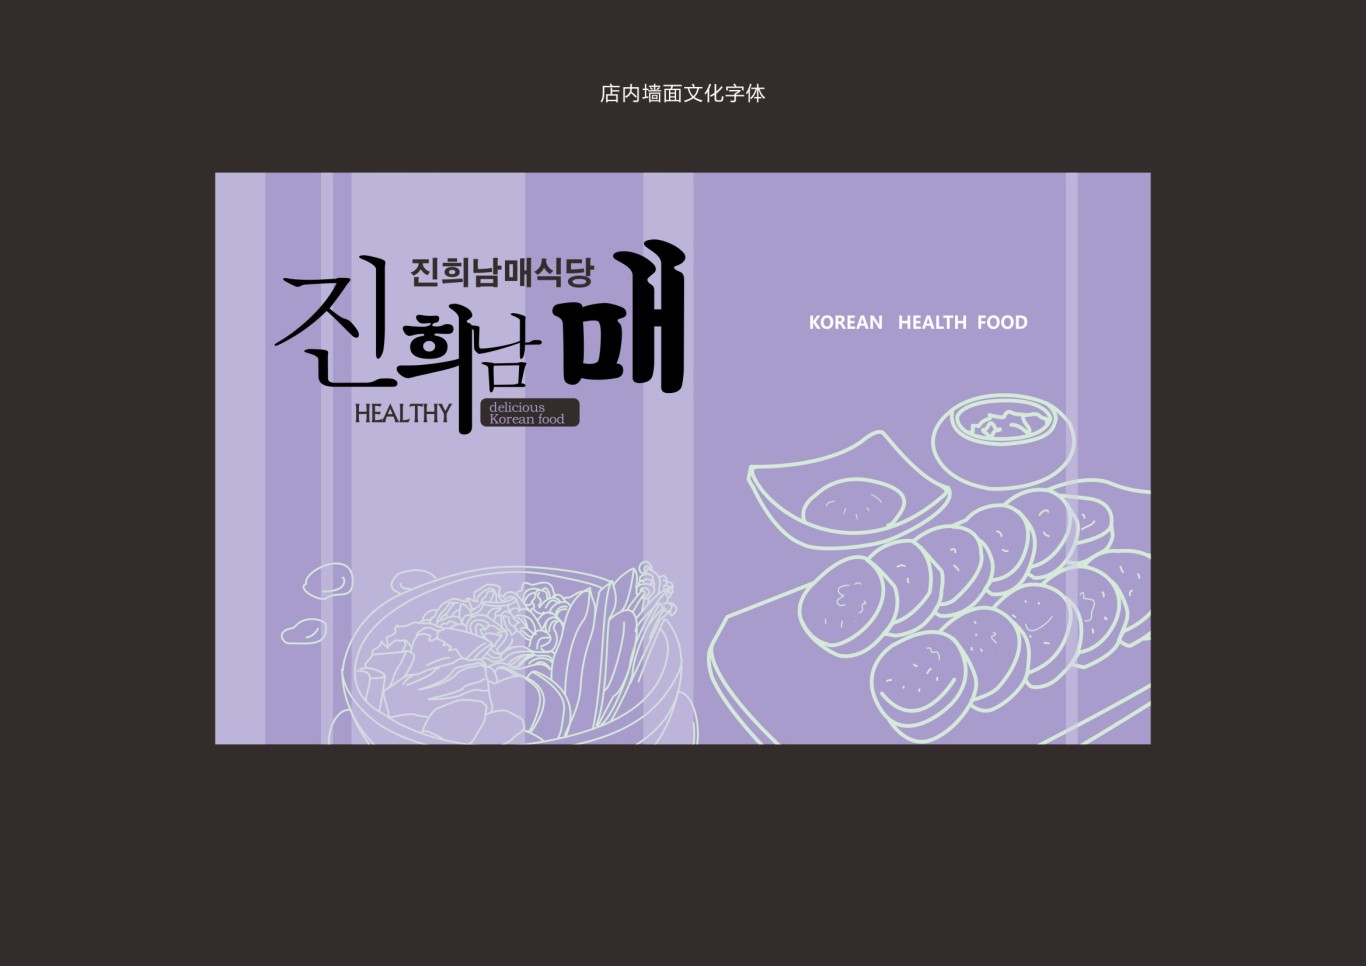 韩式简餐连锁品牌设计图19